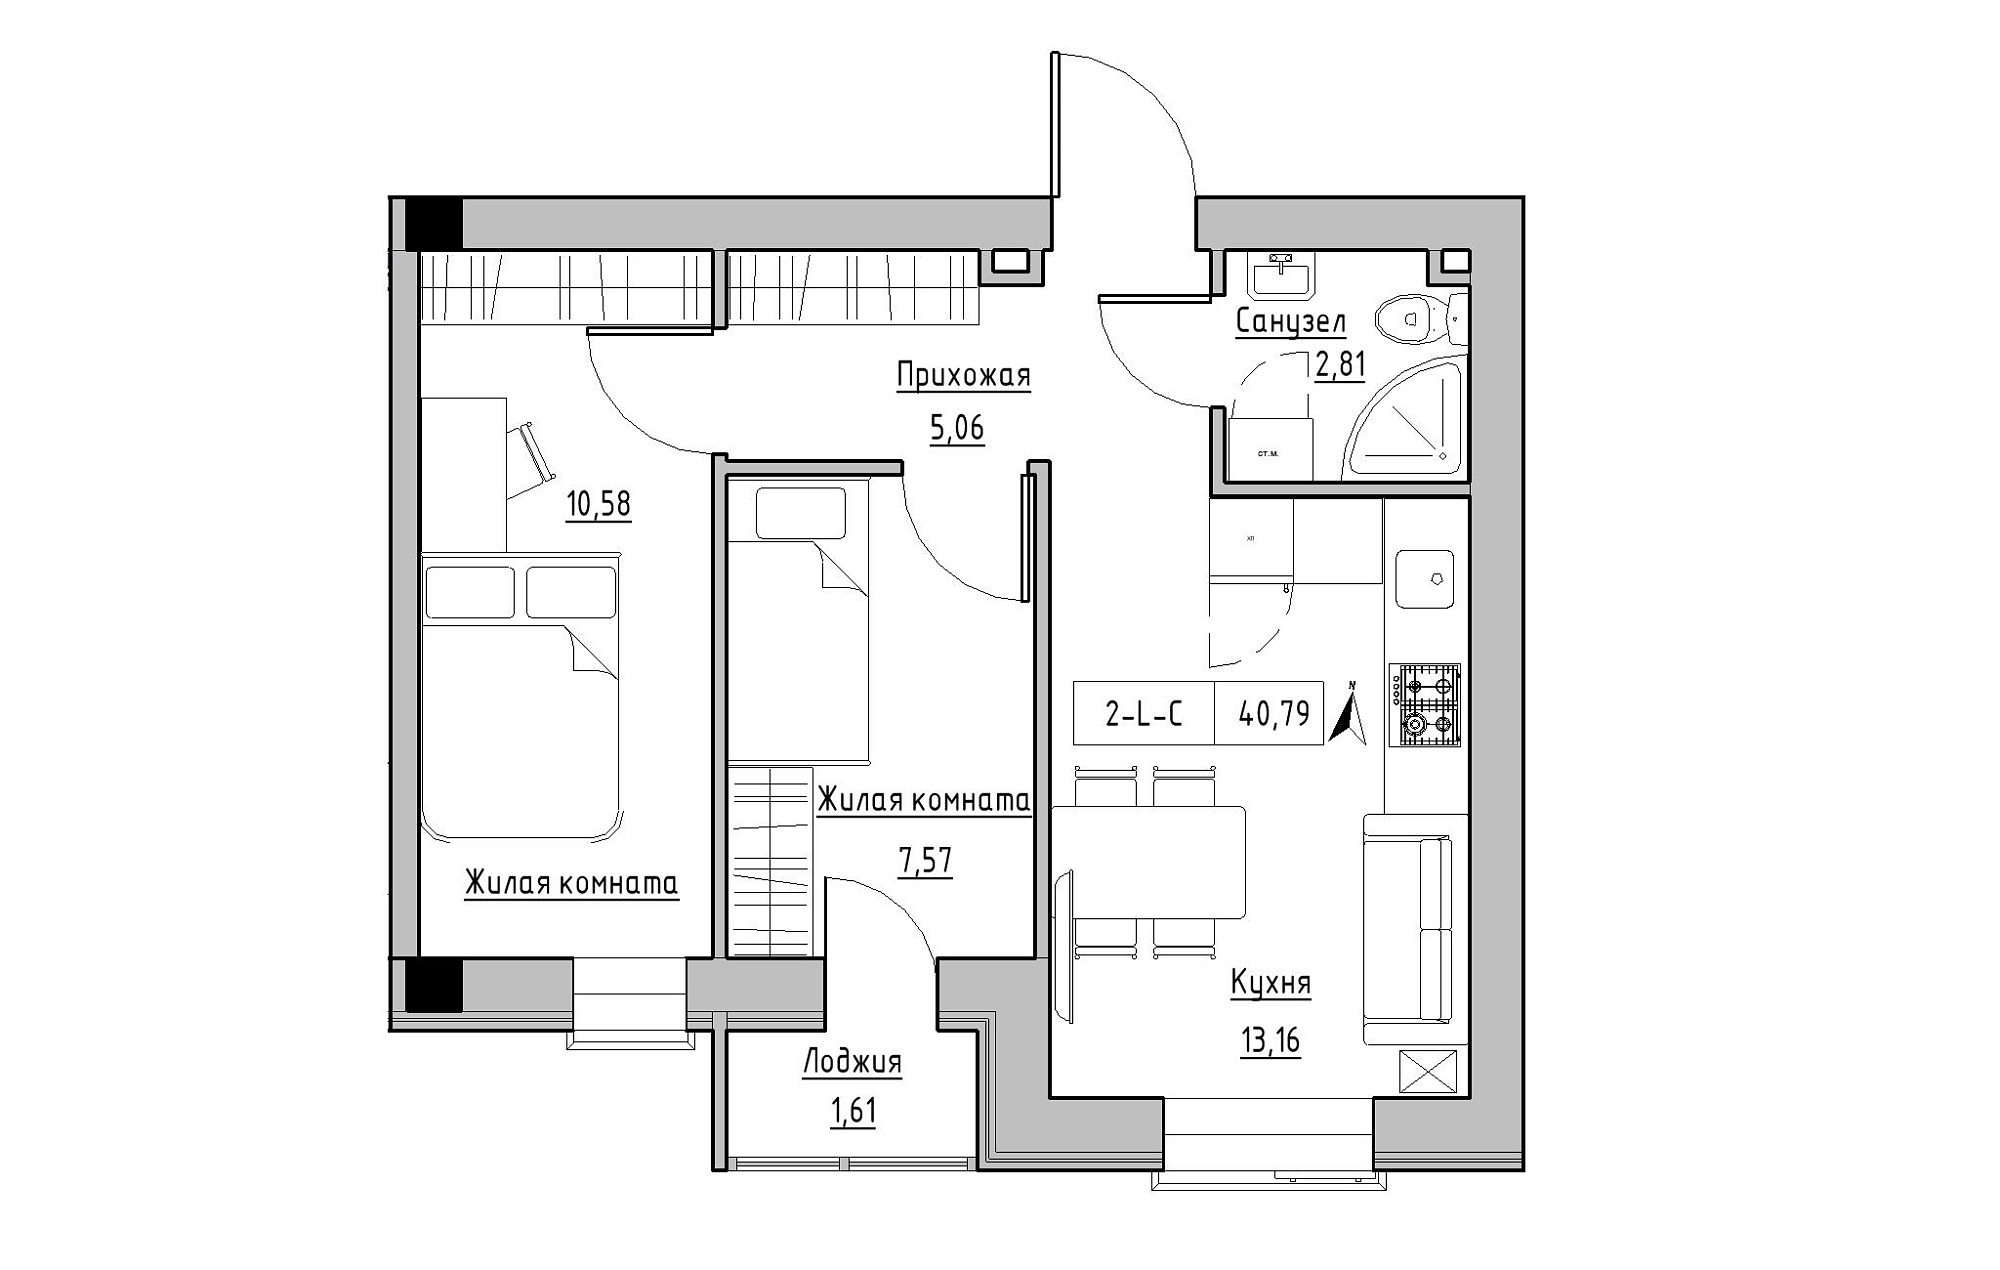 Планування 2-к квартира площею 40.79м2, KS-019-01/0011.